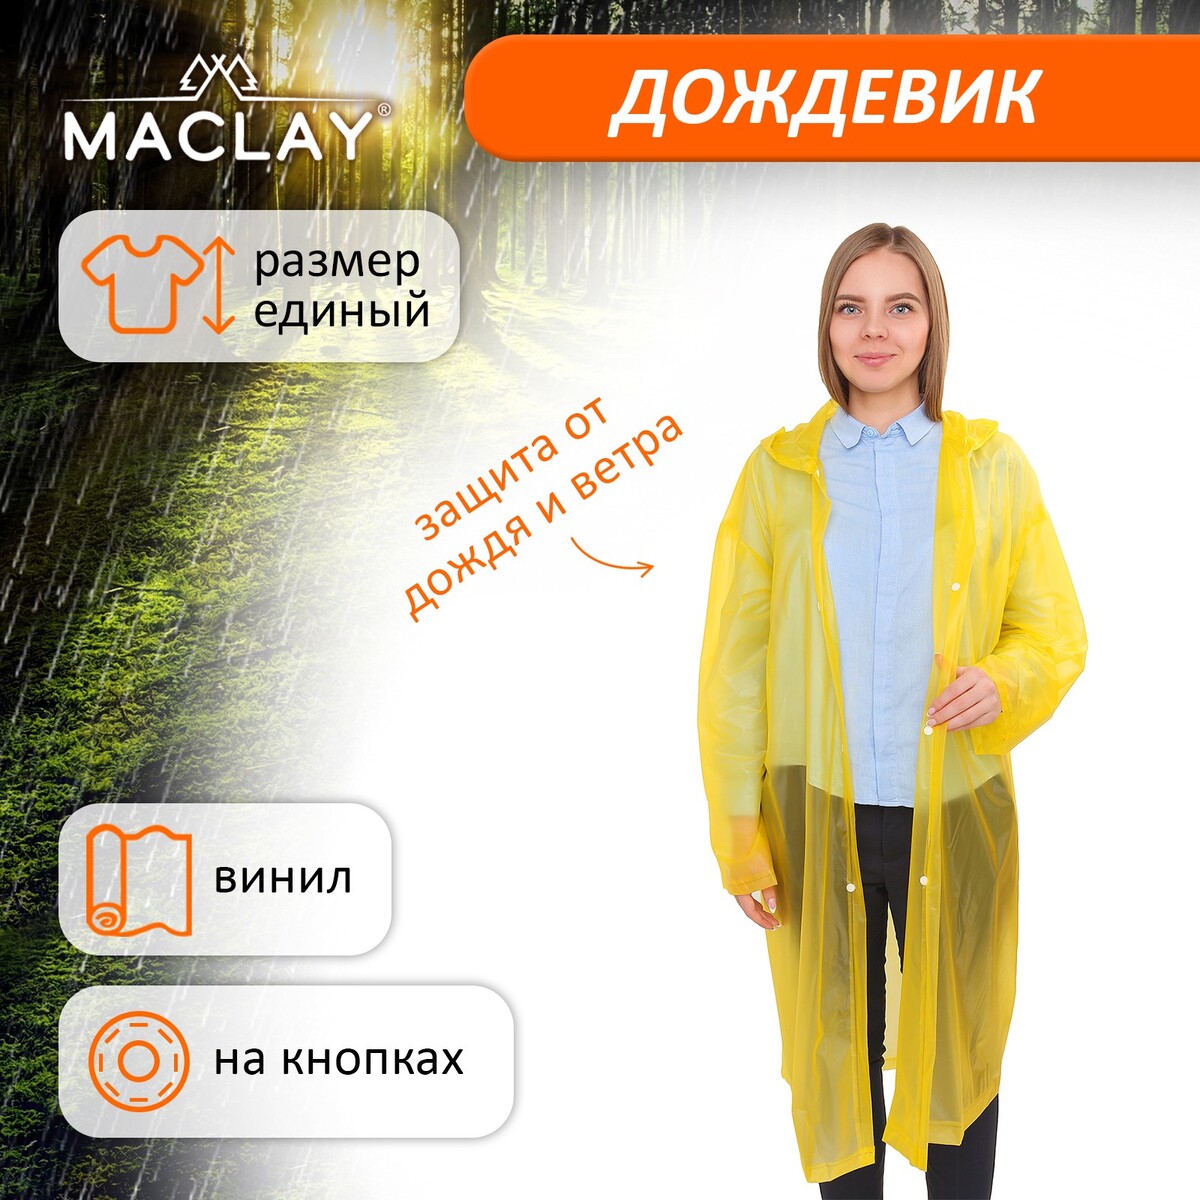 Дождевик-плащ maclay, универсальный, цвет желтый дождевик bambola классика универсальный